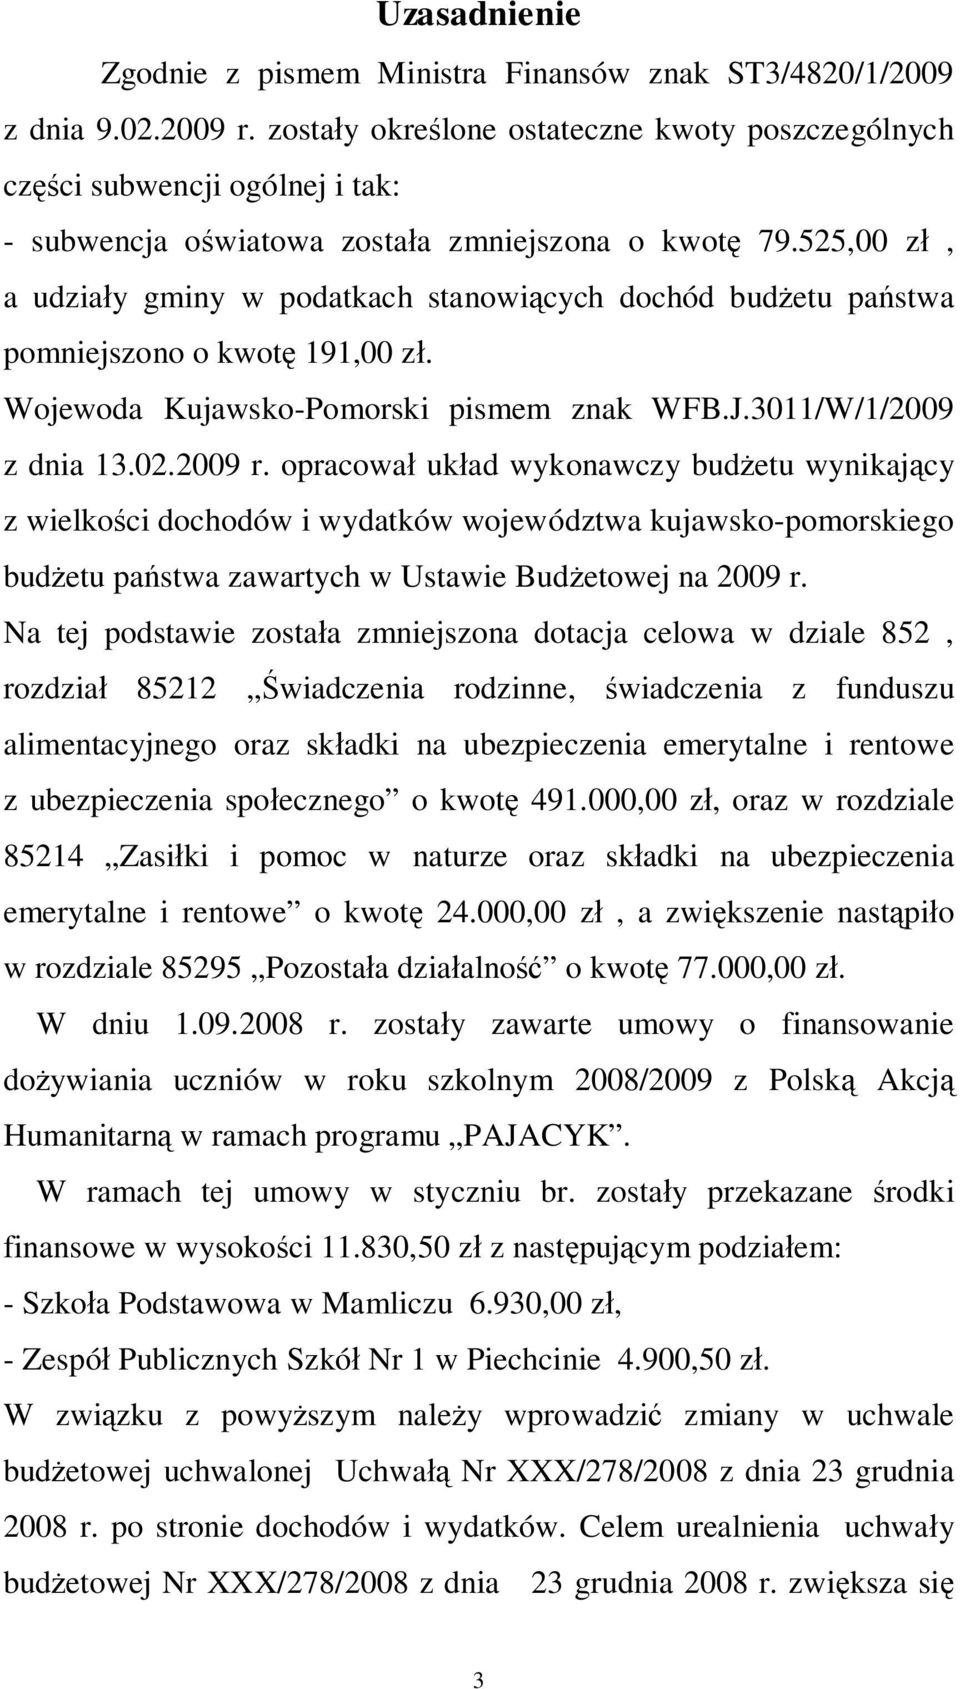 525,00 zł, a udziały gminy w podatkach stanowiących dochód budżetu państwa pomniejszono o kwotę 191,00 zł. Wojewoda Kujawsko-Pomorski pismem znak WFB.J.3011/W/1/2009 z dnia 13.02.2009 r.